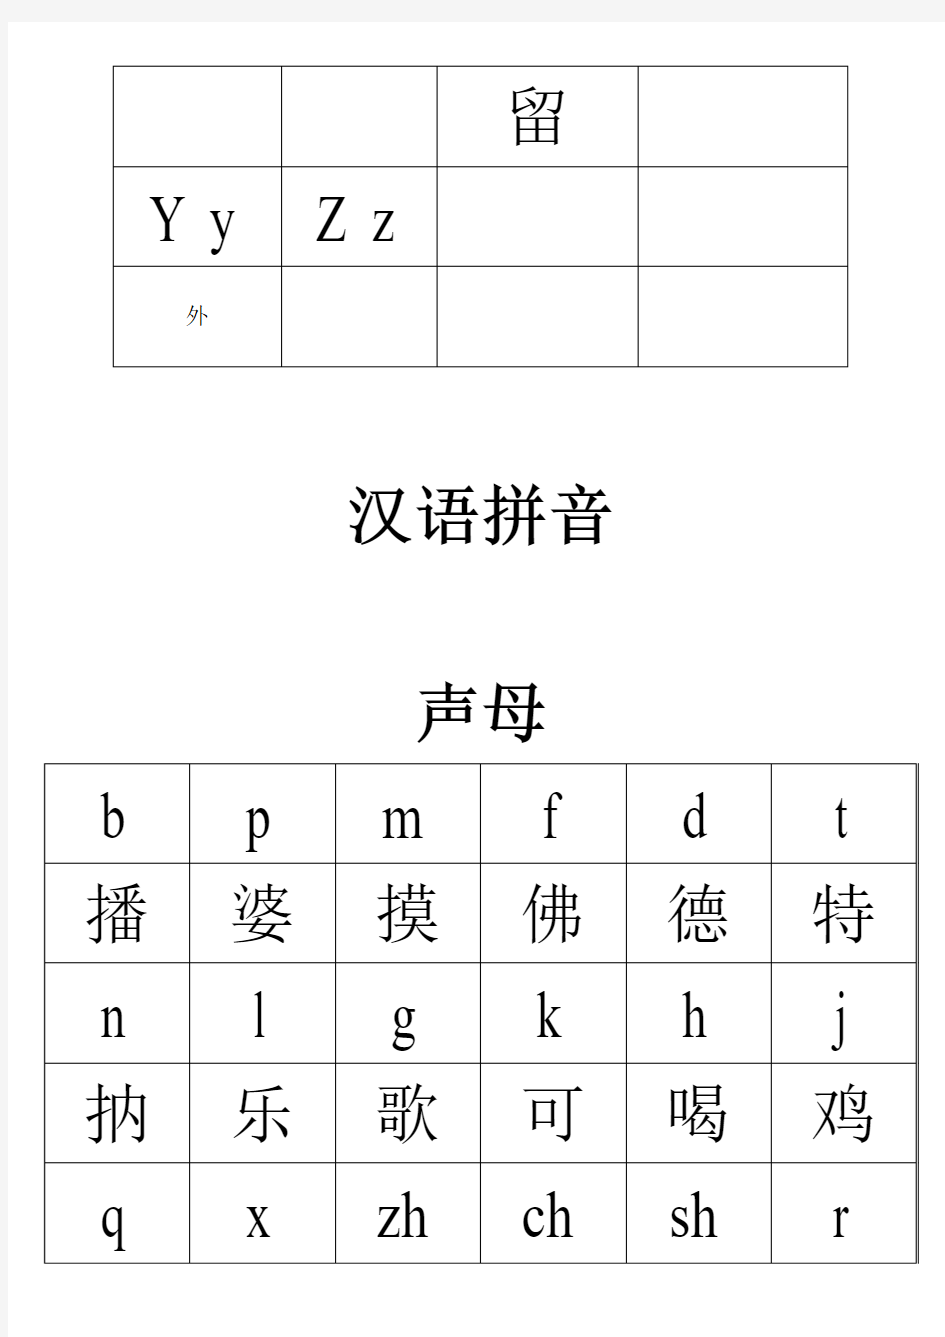 成人或老年人汉语拼音和英文字母表